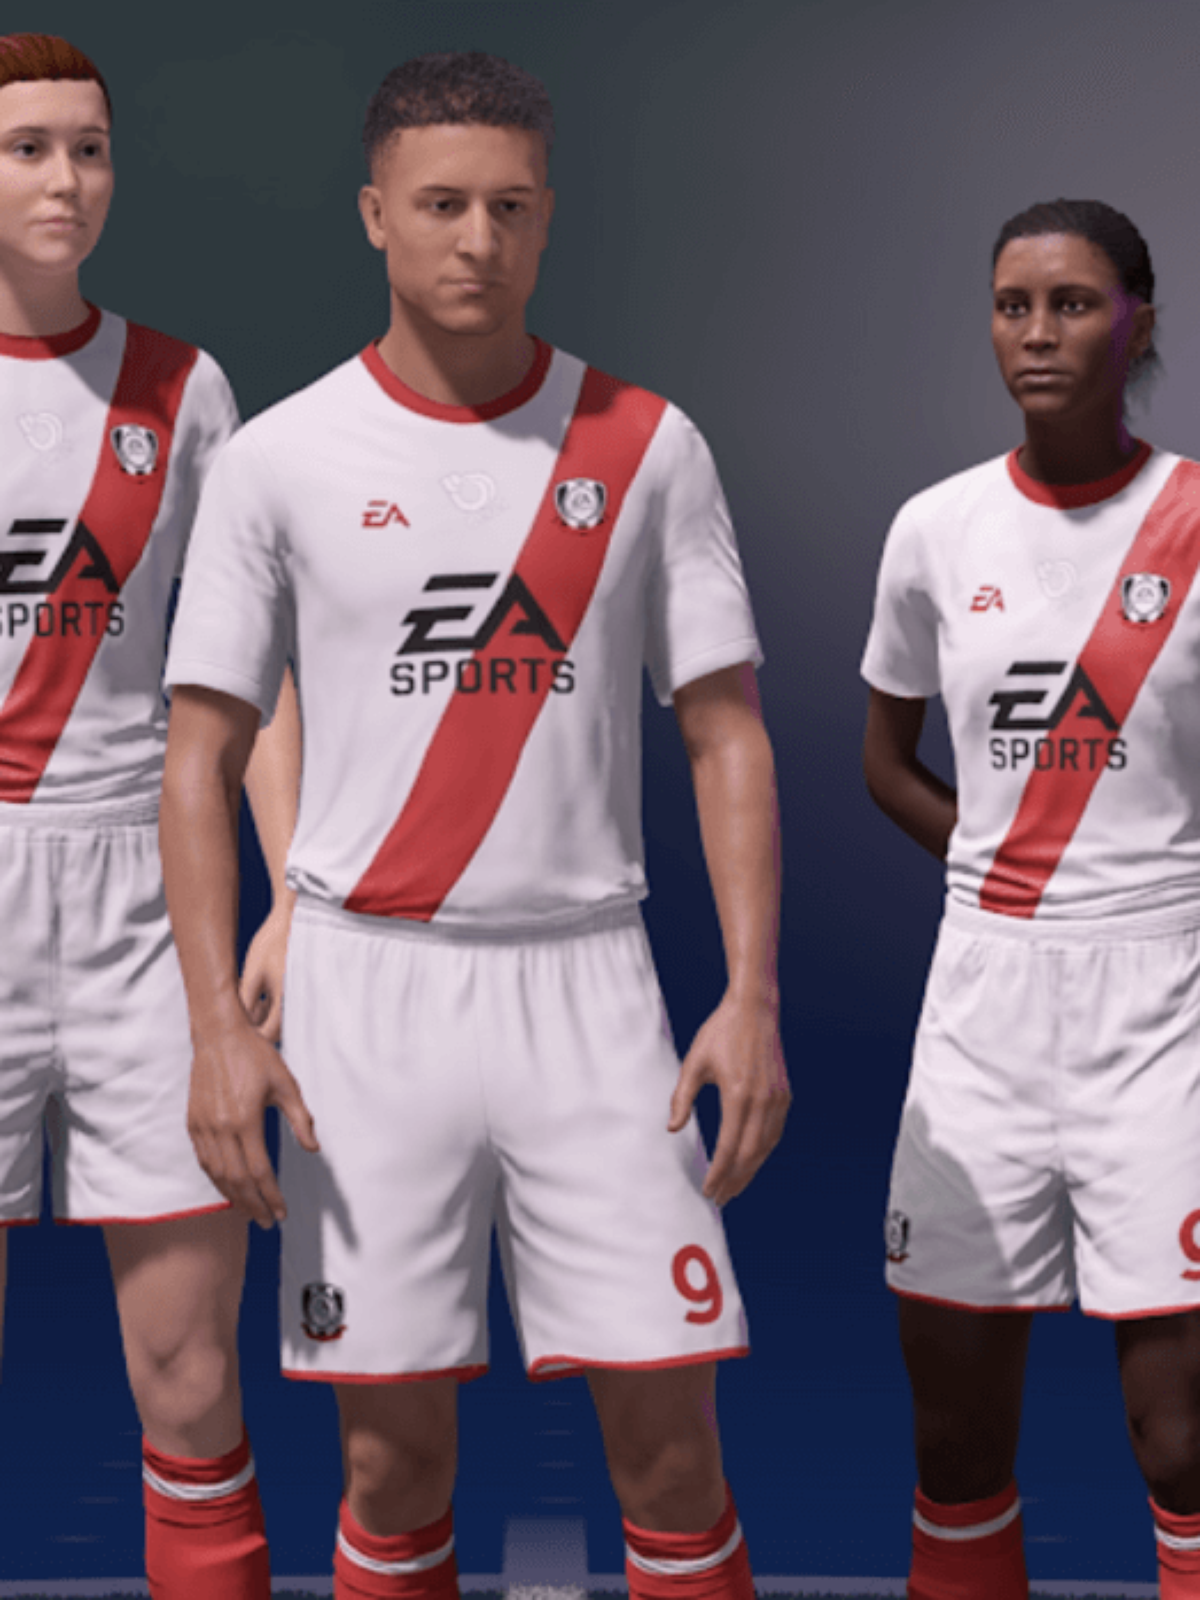 Hino Oficial - Galáticos Football Players ( EA FIFA Pro Clubs ) 